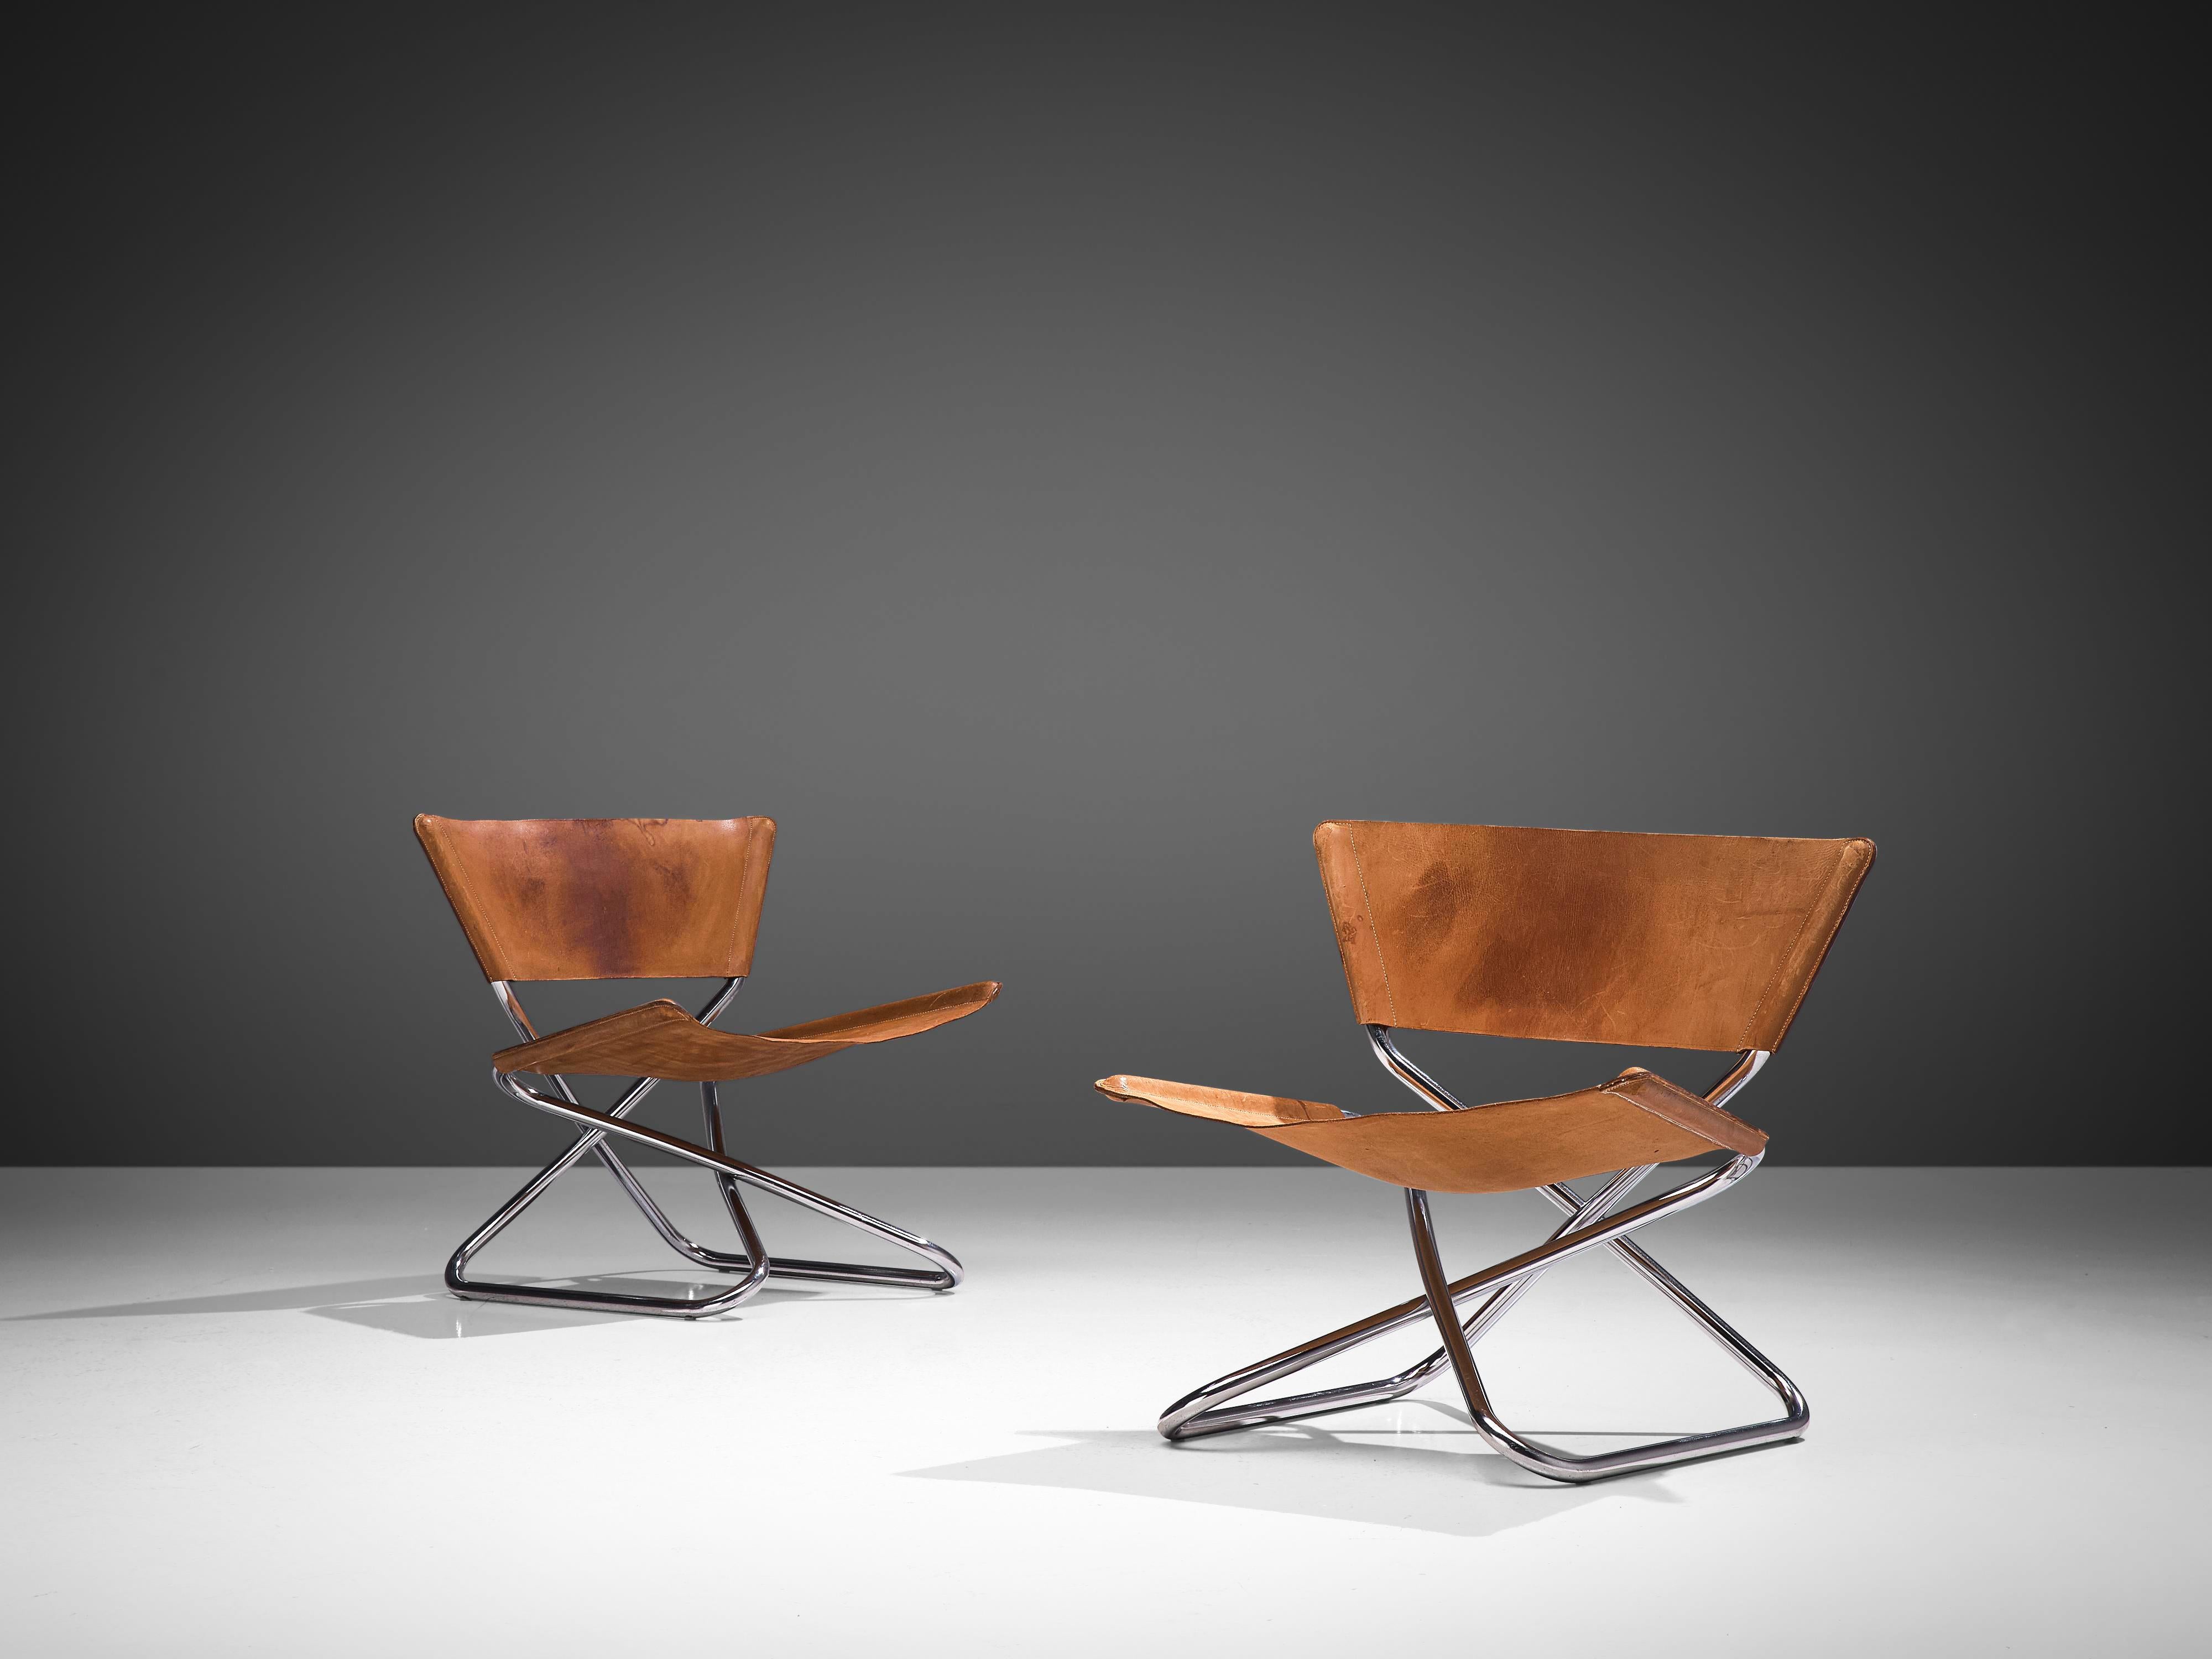 Erik Magnussen for Torben Ørskov, pair of 'Z' easy chairs, leather and chromed steel, Denmark, 1960s.

Pair of Scandinavian Modern 